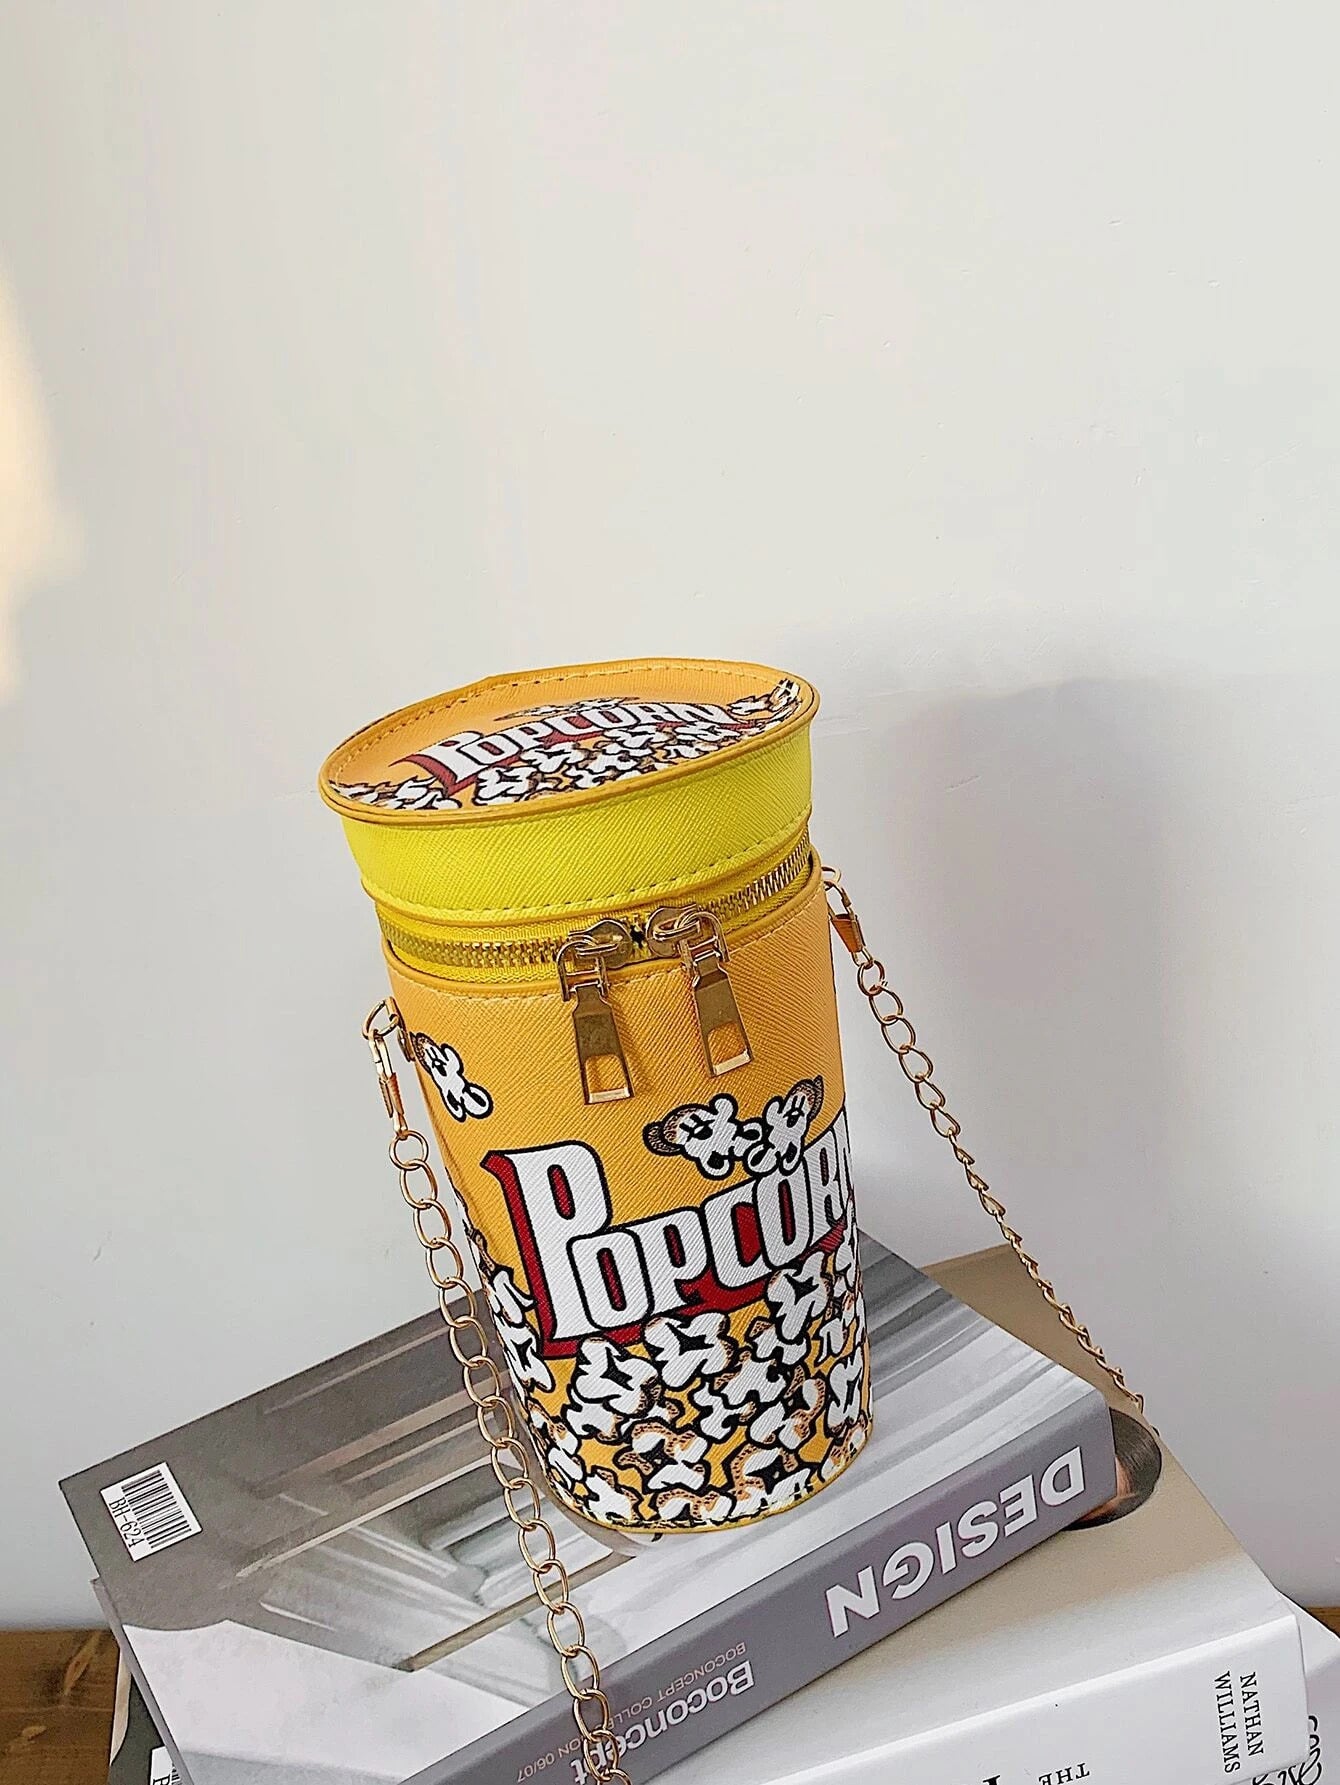 Popcorn Novelty Bag